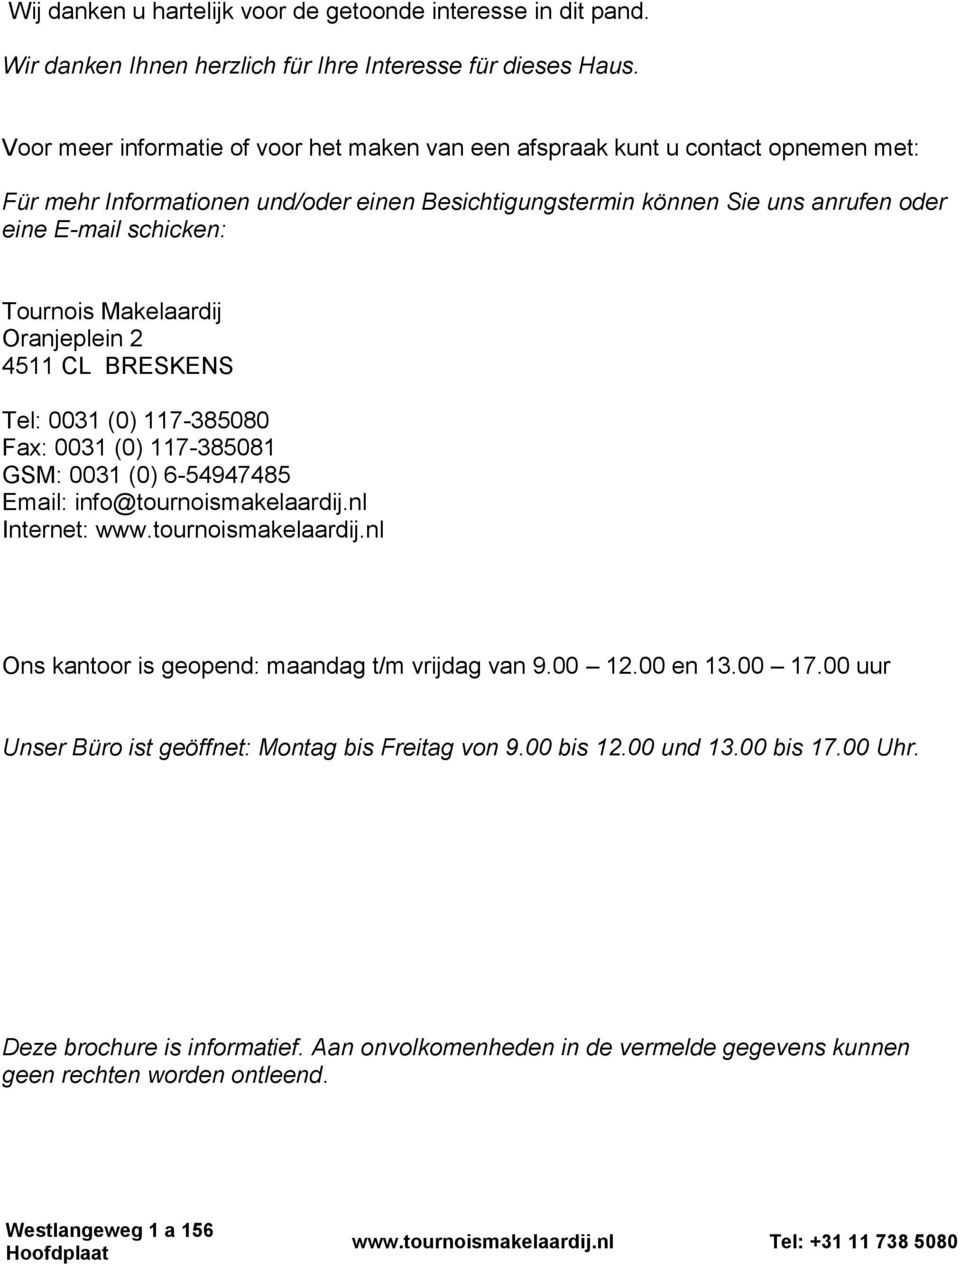 Tournois Makelaardij Oranjeplein 2 4511 CL BRESKENS Tel: 0031 (0) 117-385080 Fax: 0031 (0) 117-385081 GSM: 0031 (0) 6-54947485 Email: info@tournoismakelaardij.